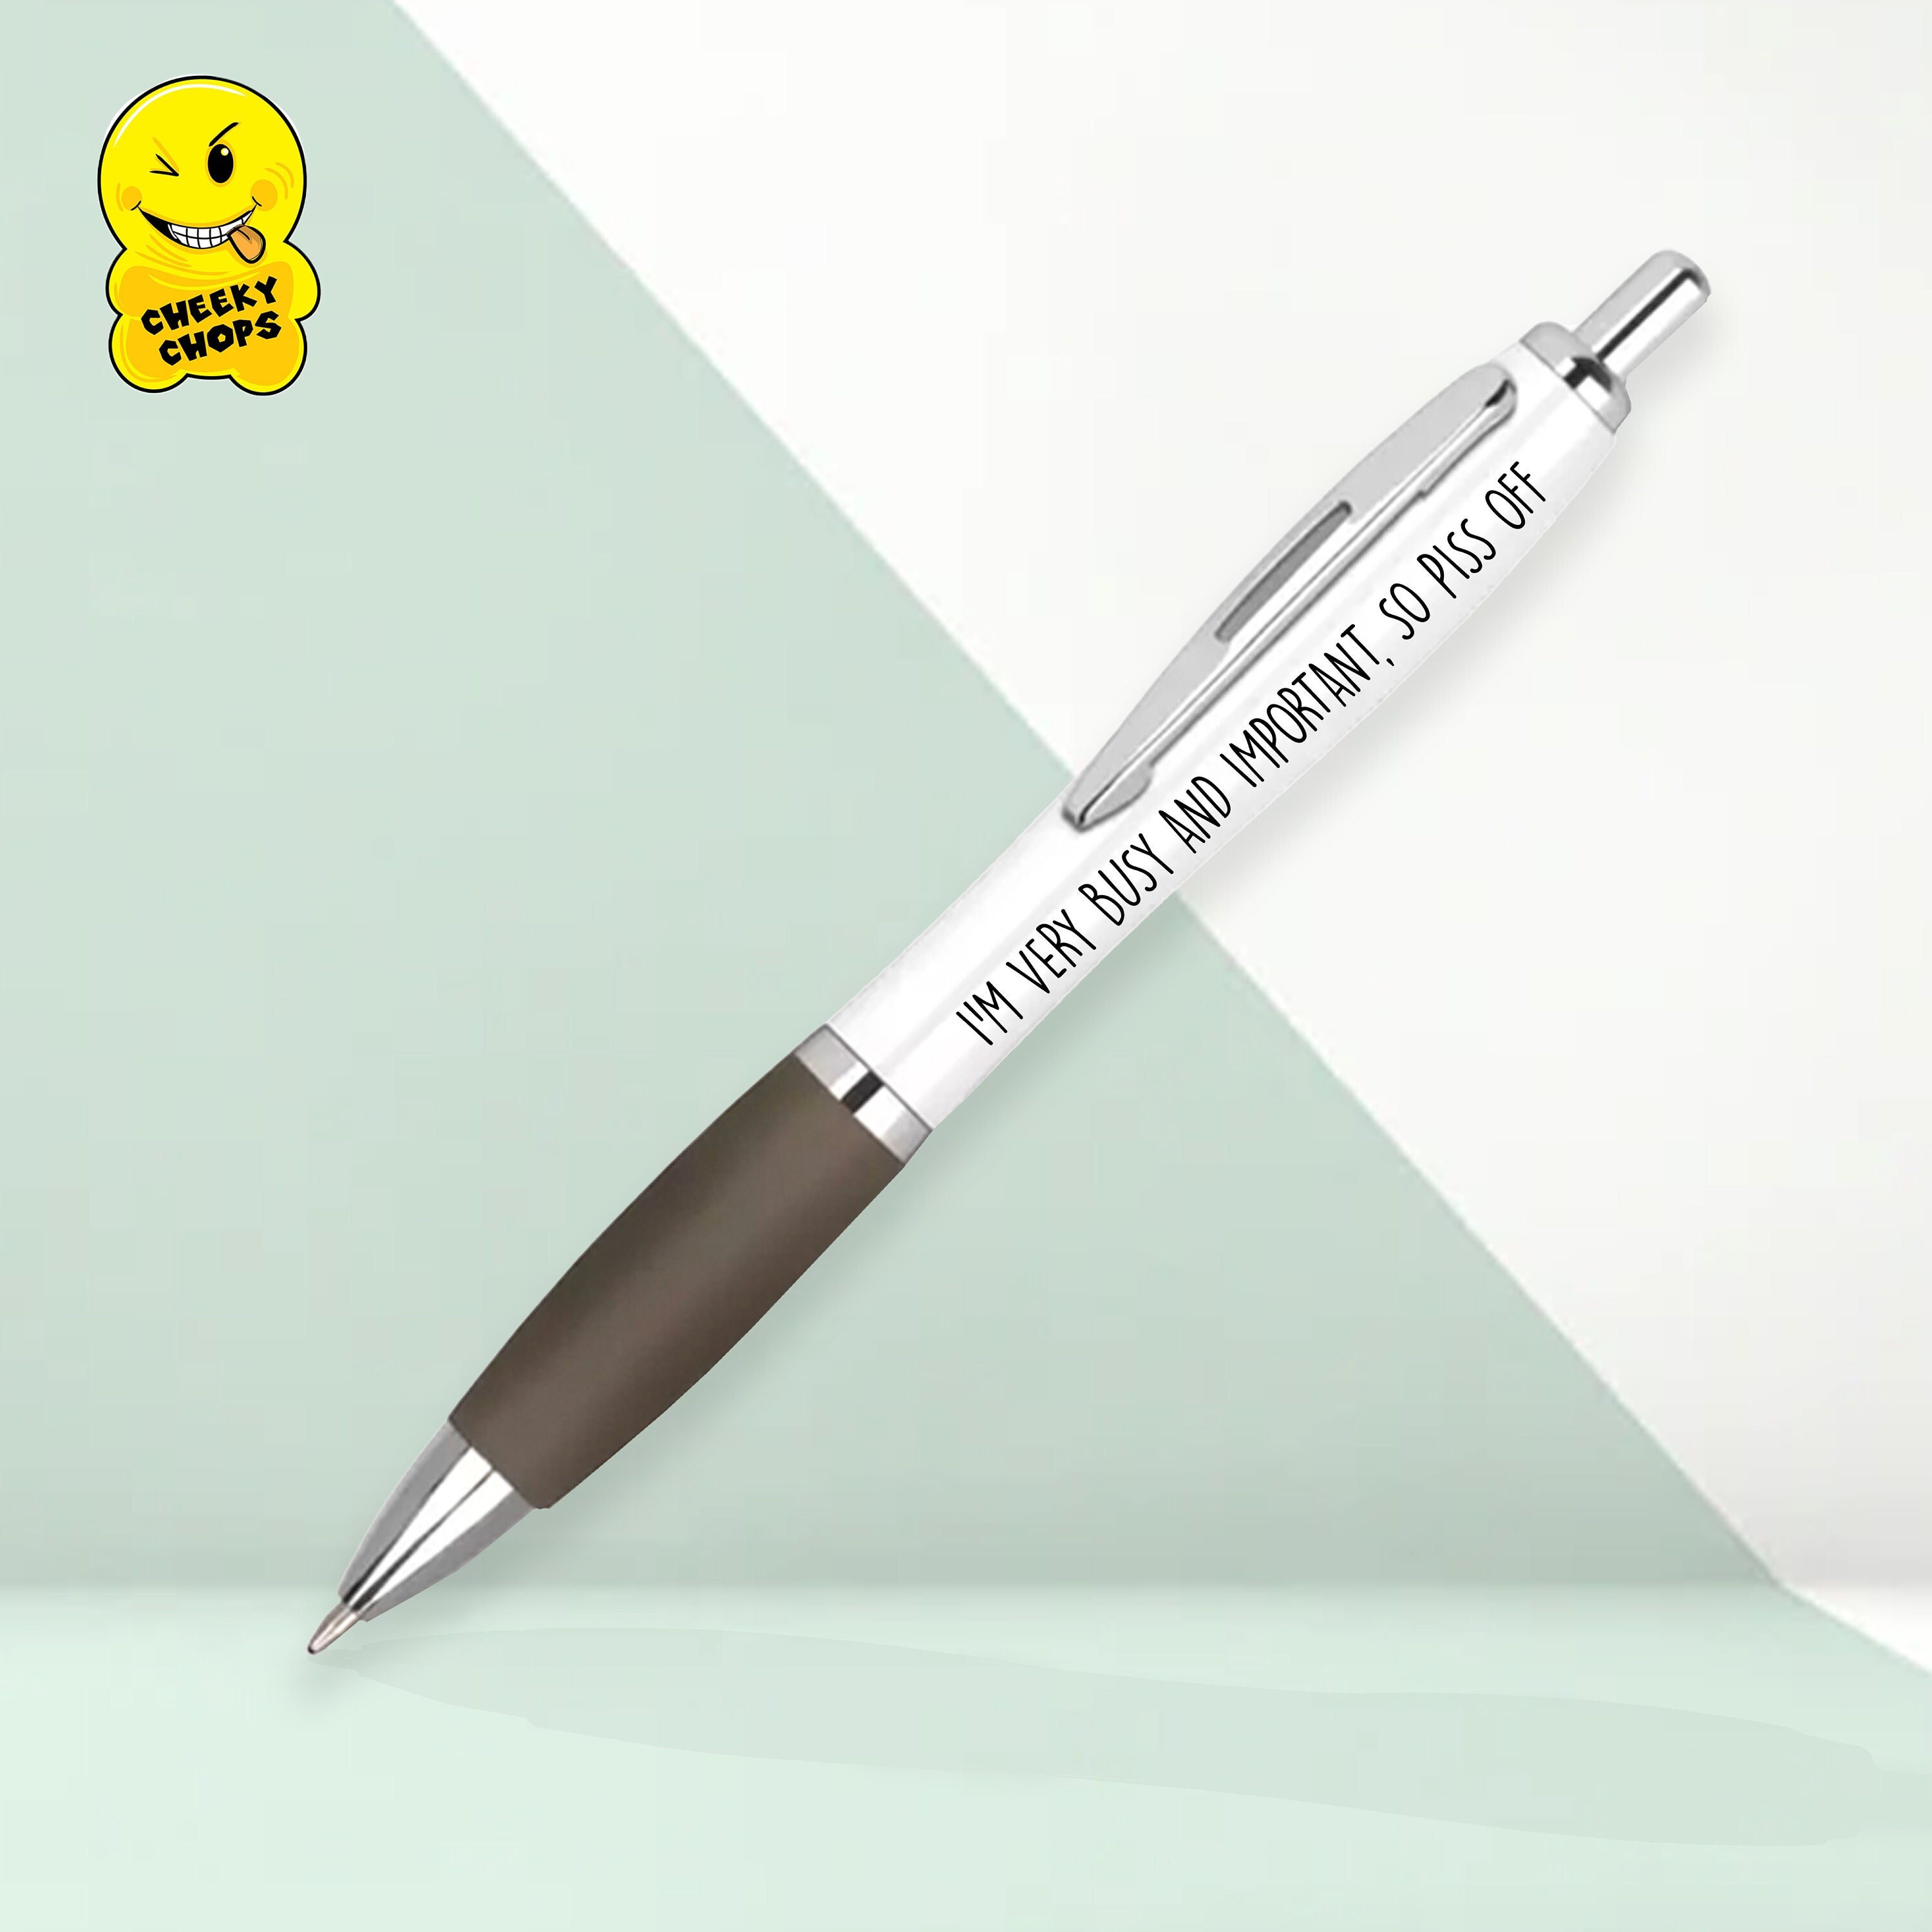  Motivational Badass Pen Set, Funny Pens Swear Word